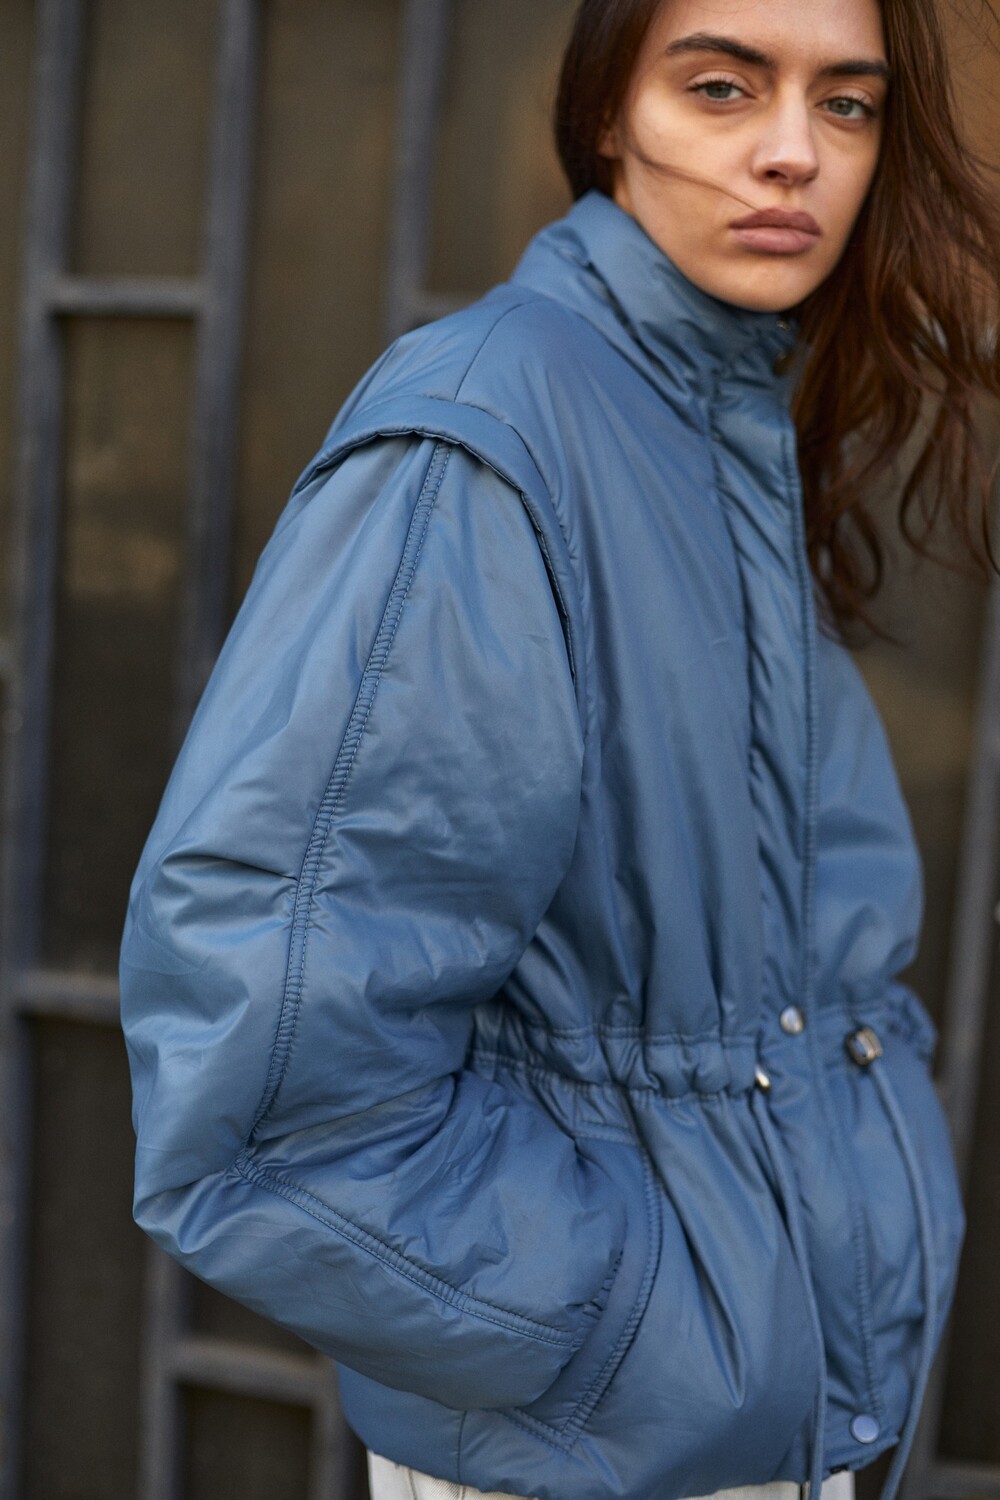 Muscovite girl jacket in blue